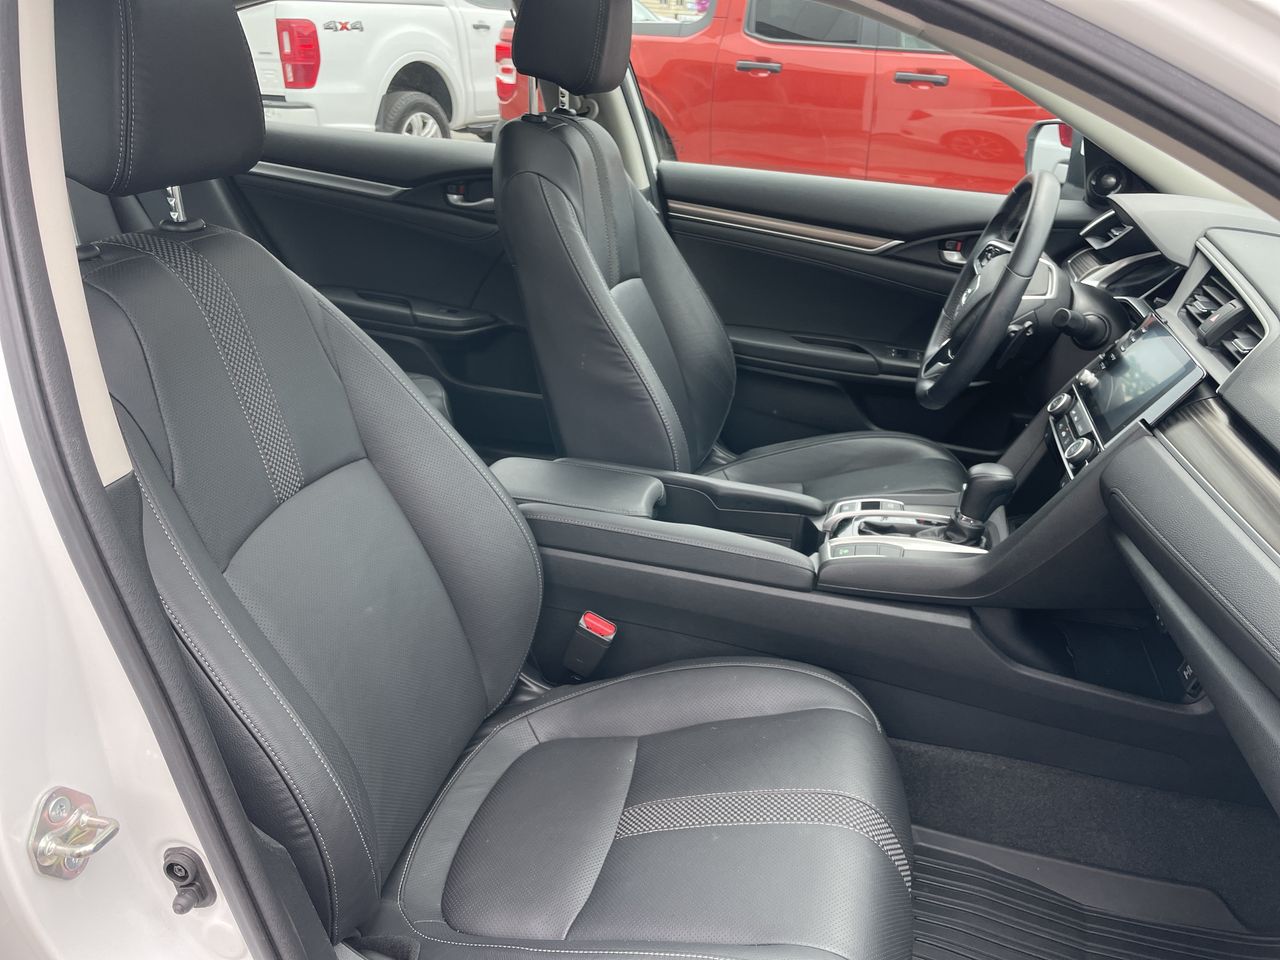 2019 Honda Civic Sedan - P21099 Full Image 25